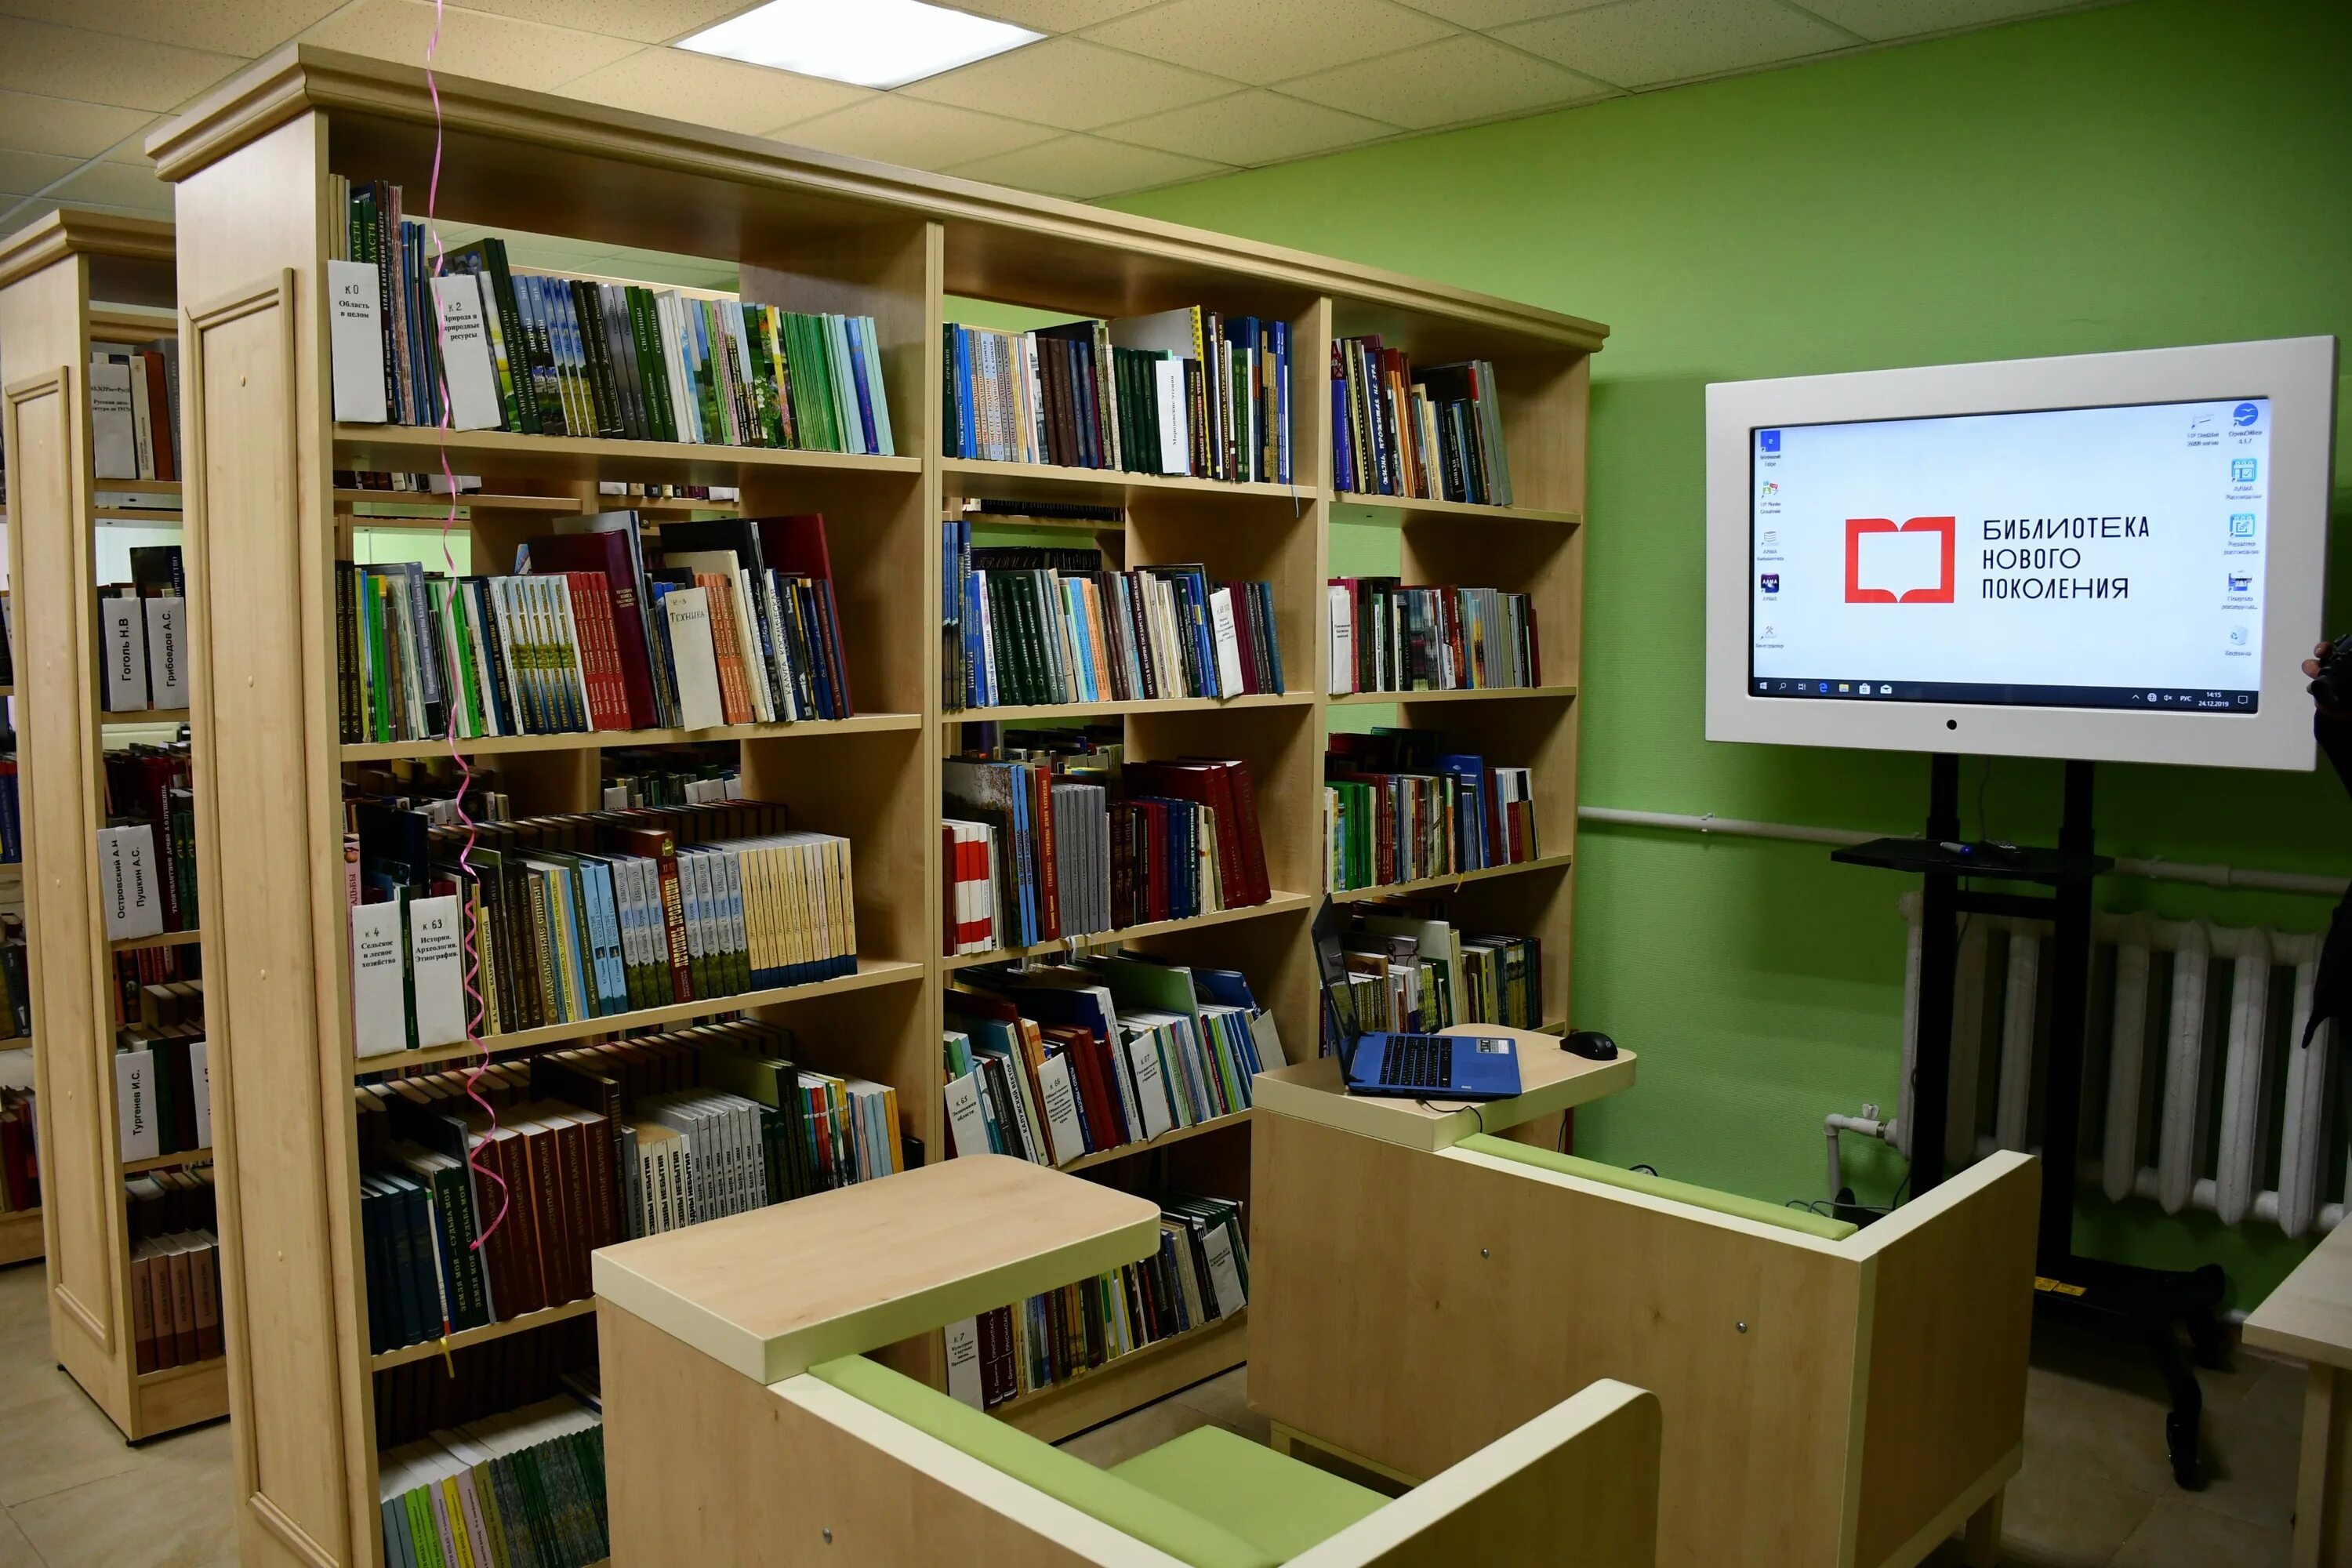 Модельная библиотека. Библиотека нового поколения. Муниципальная библиотека. Современная Российская библиотека. России новая библиотека